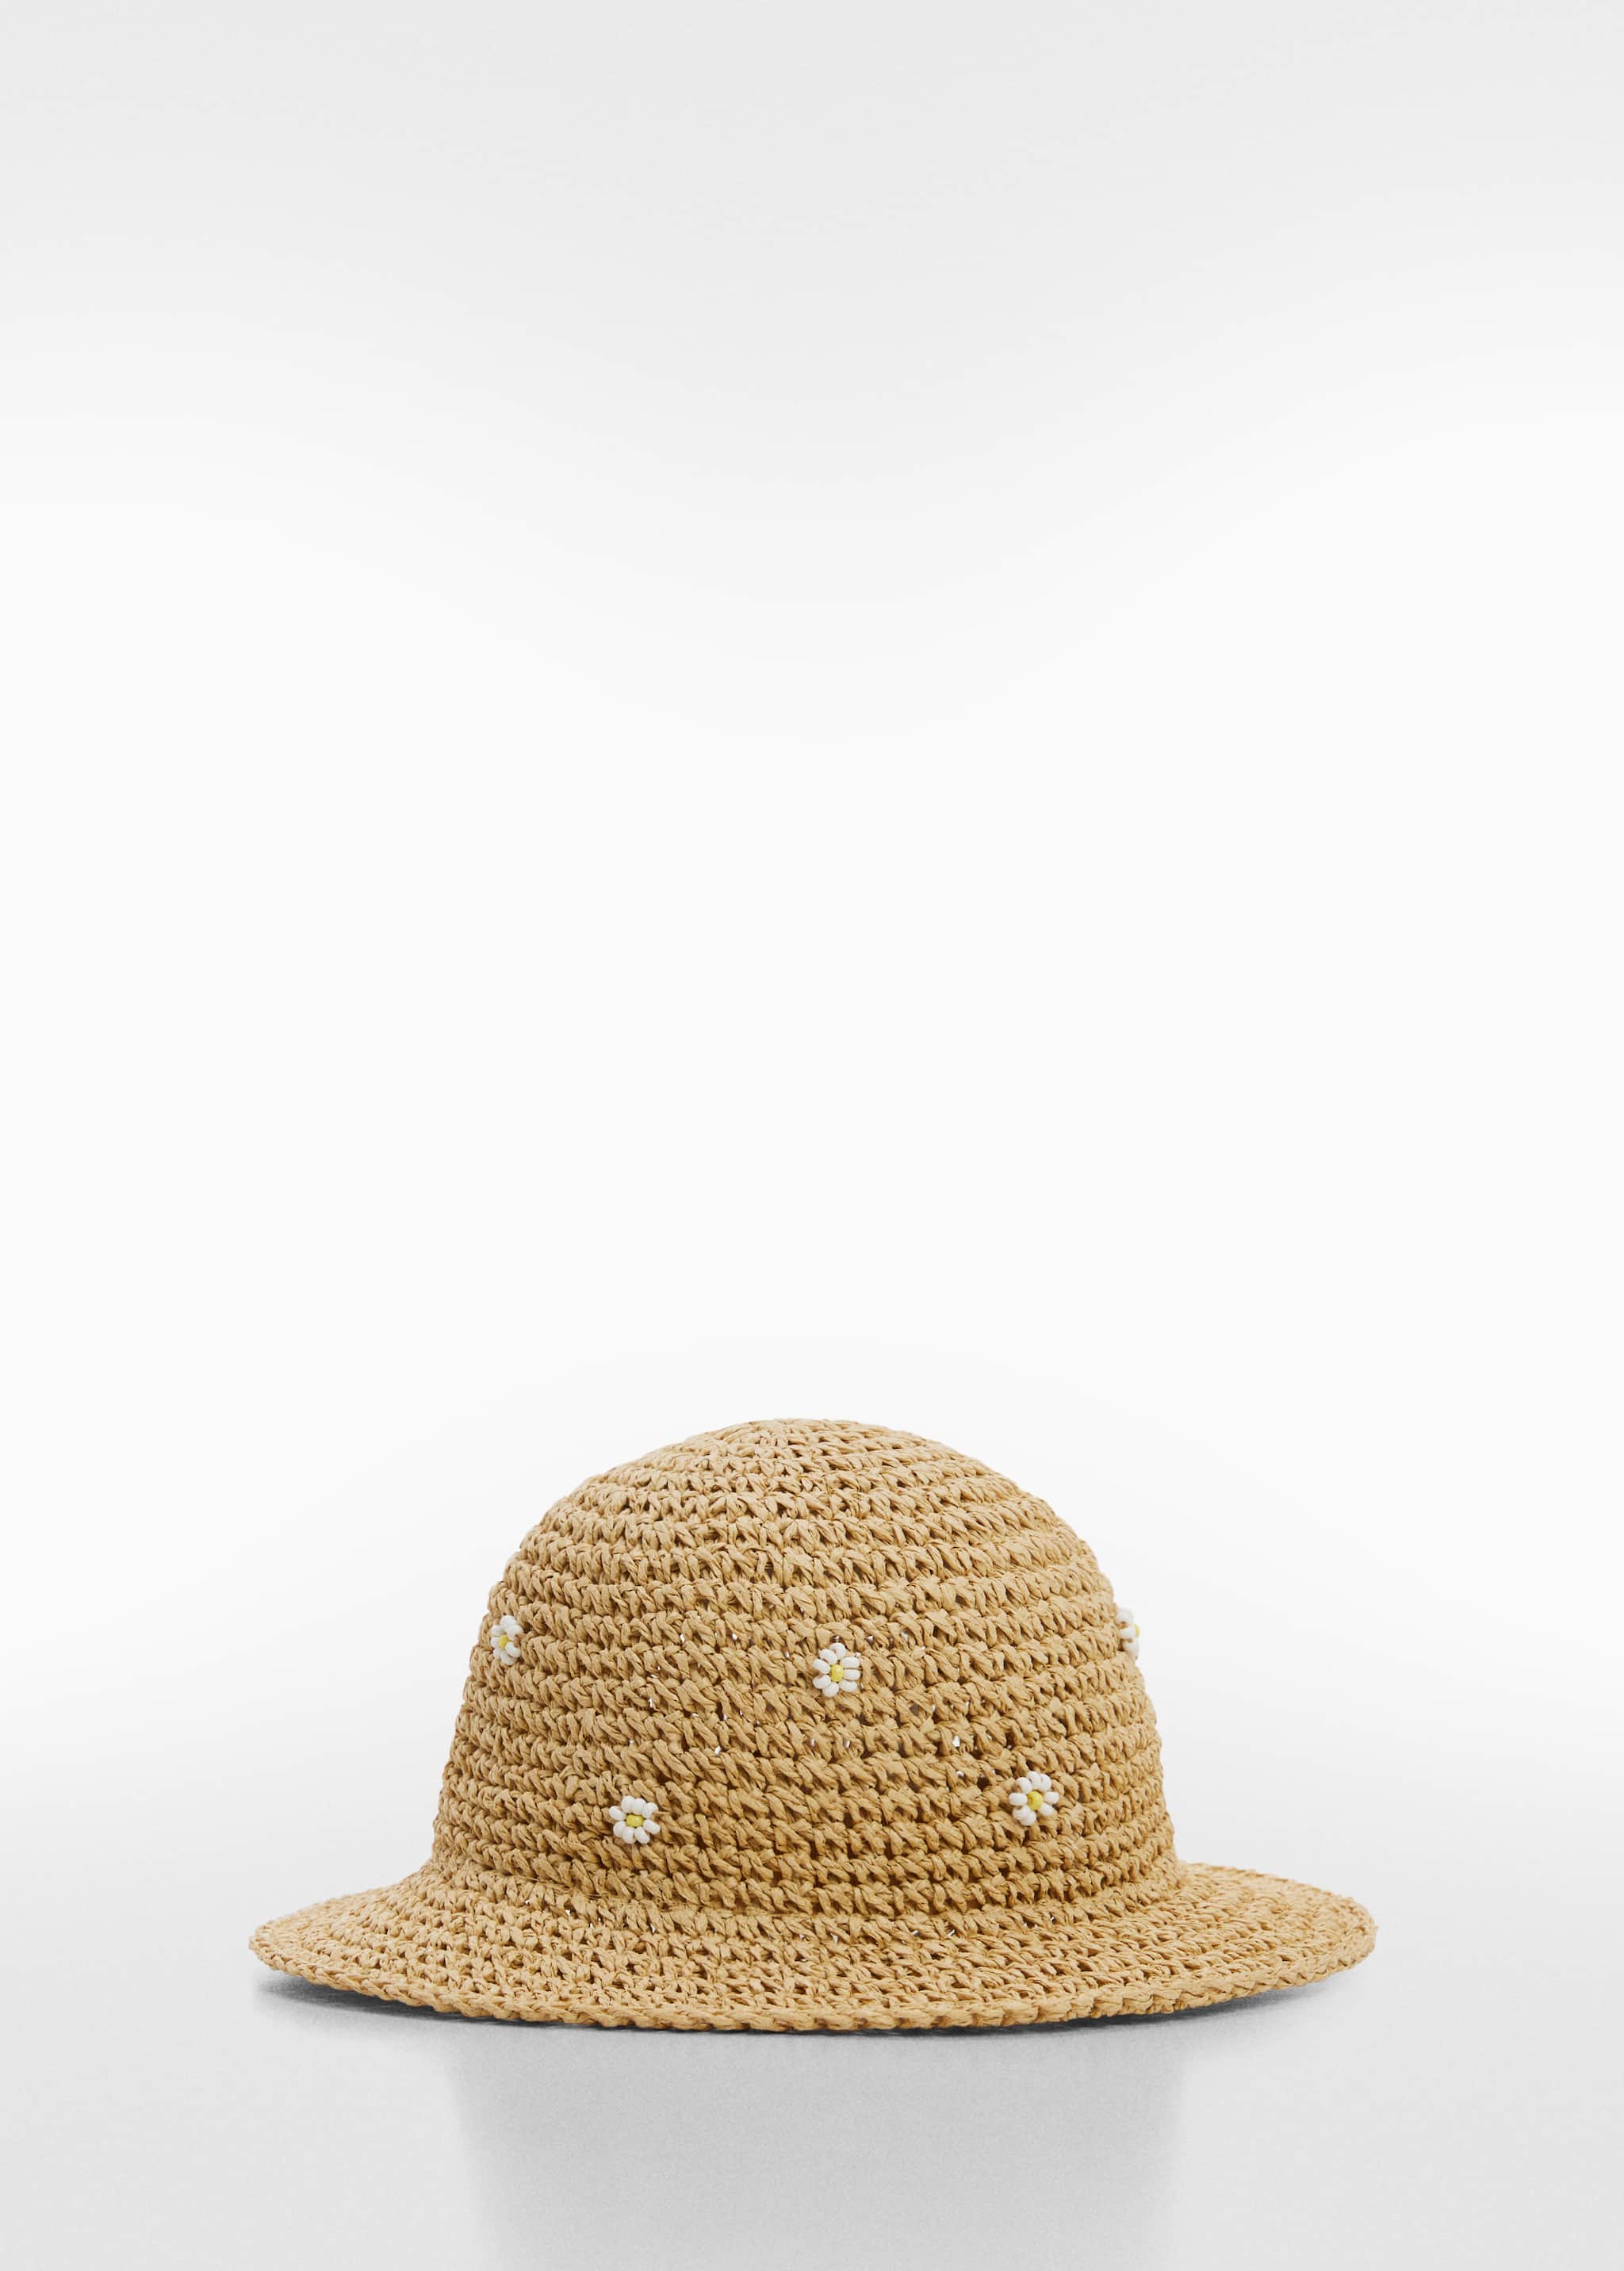 Соломенная шляпа с цветами - Изделие без модели